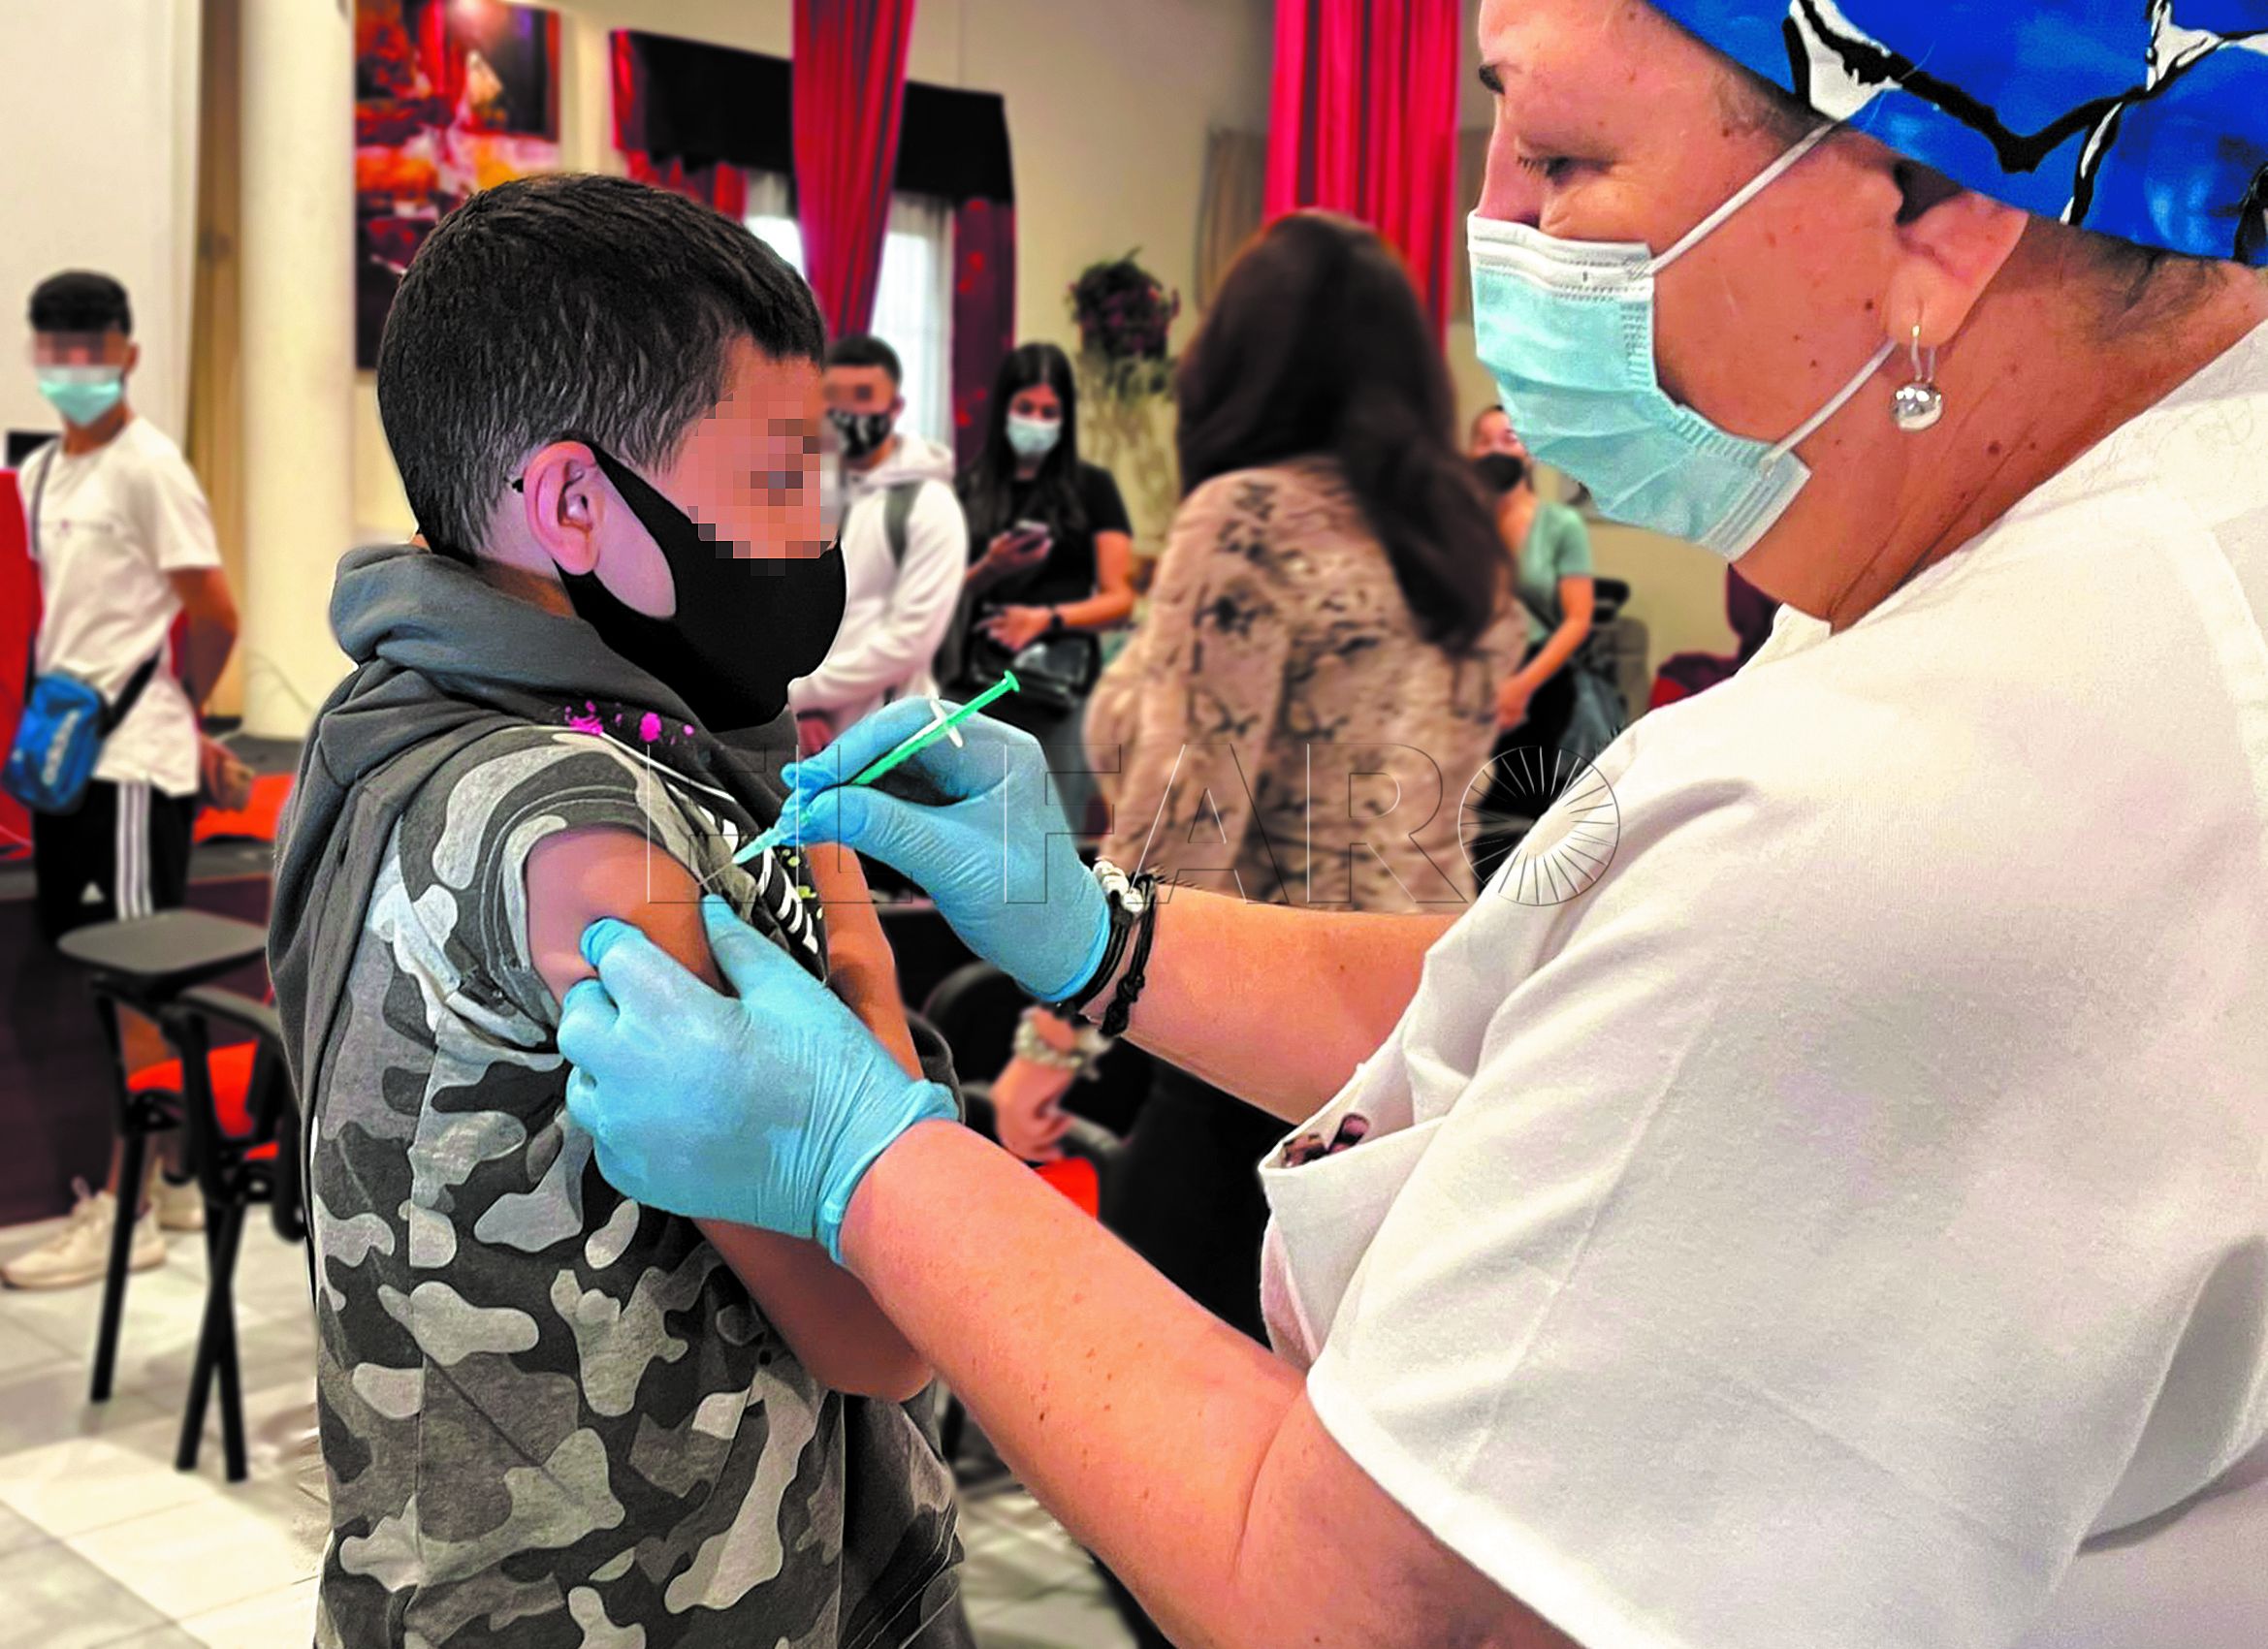 A finales de enero se llevó a cabo la vacunación en los colegios de la ciudad.